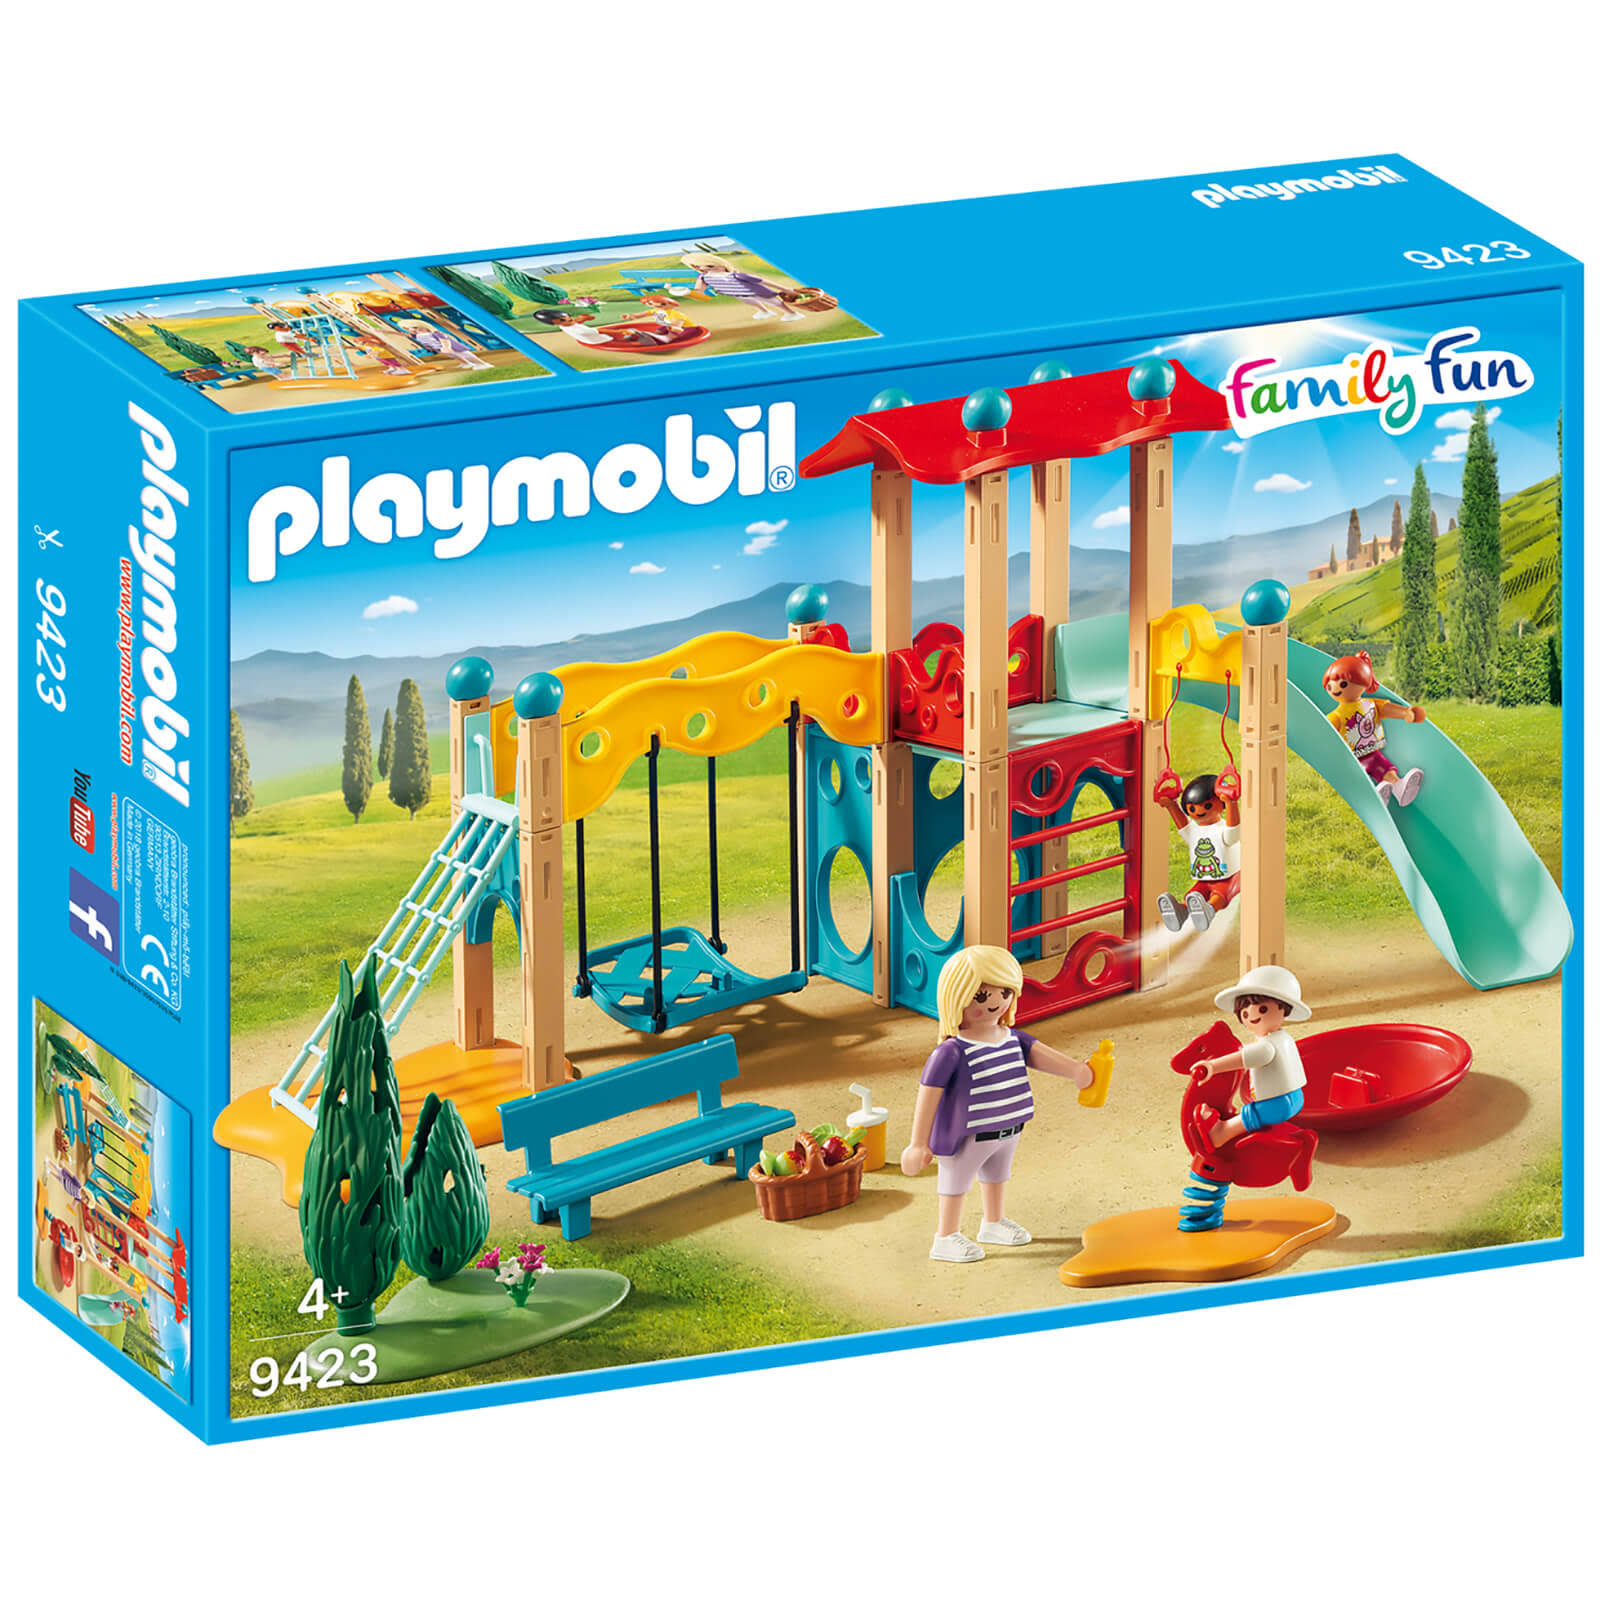 Playmobil 9423 Family & Fun Big Playground